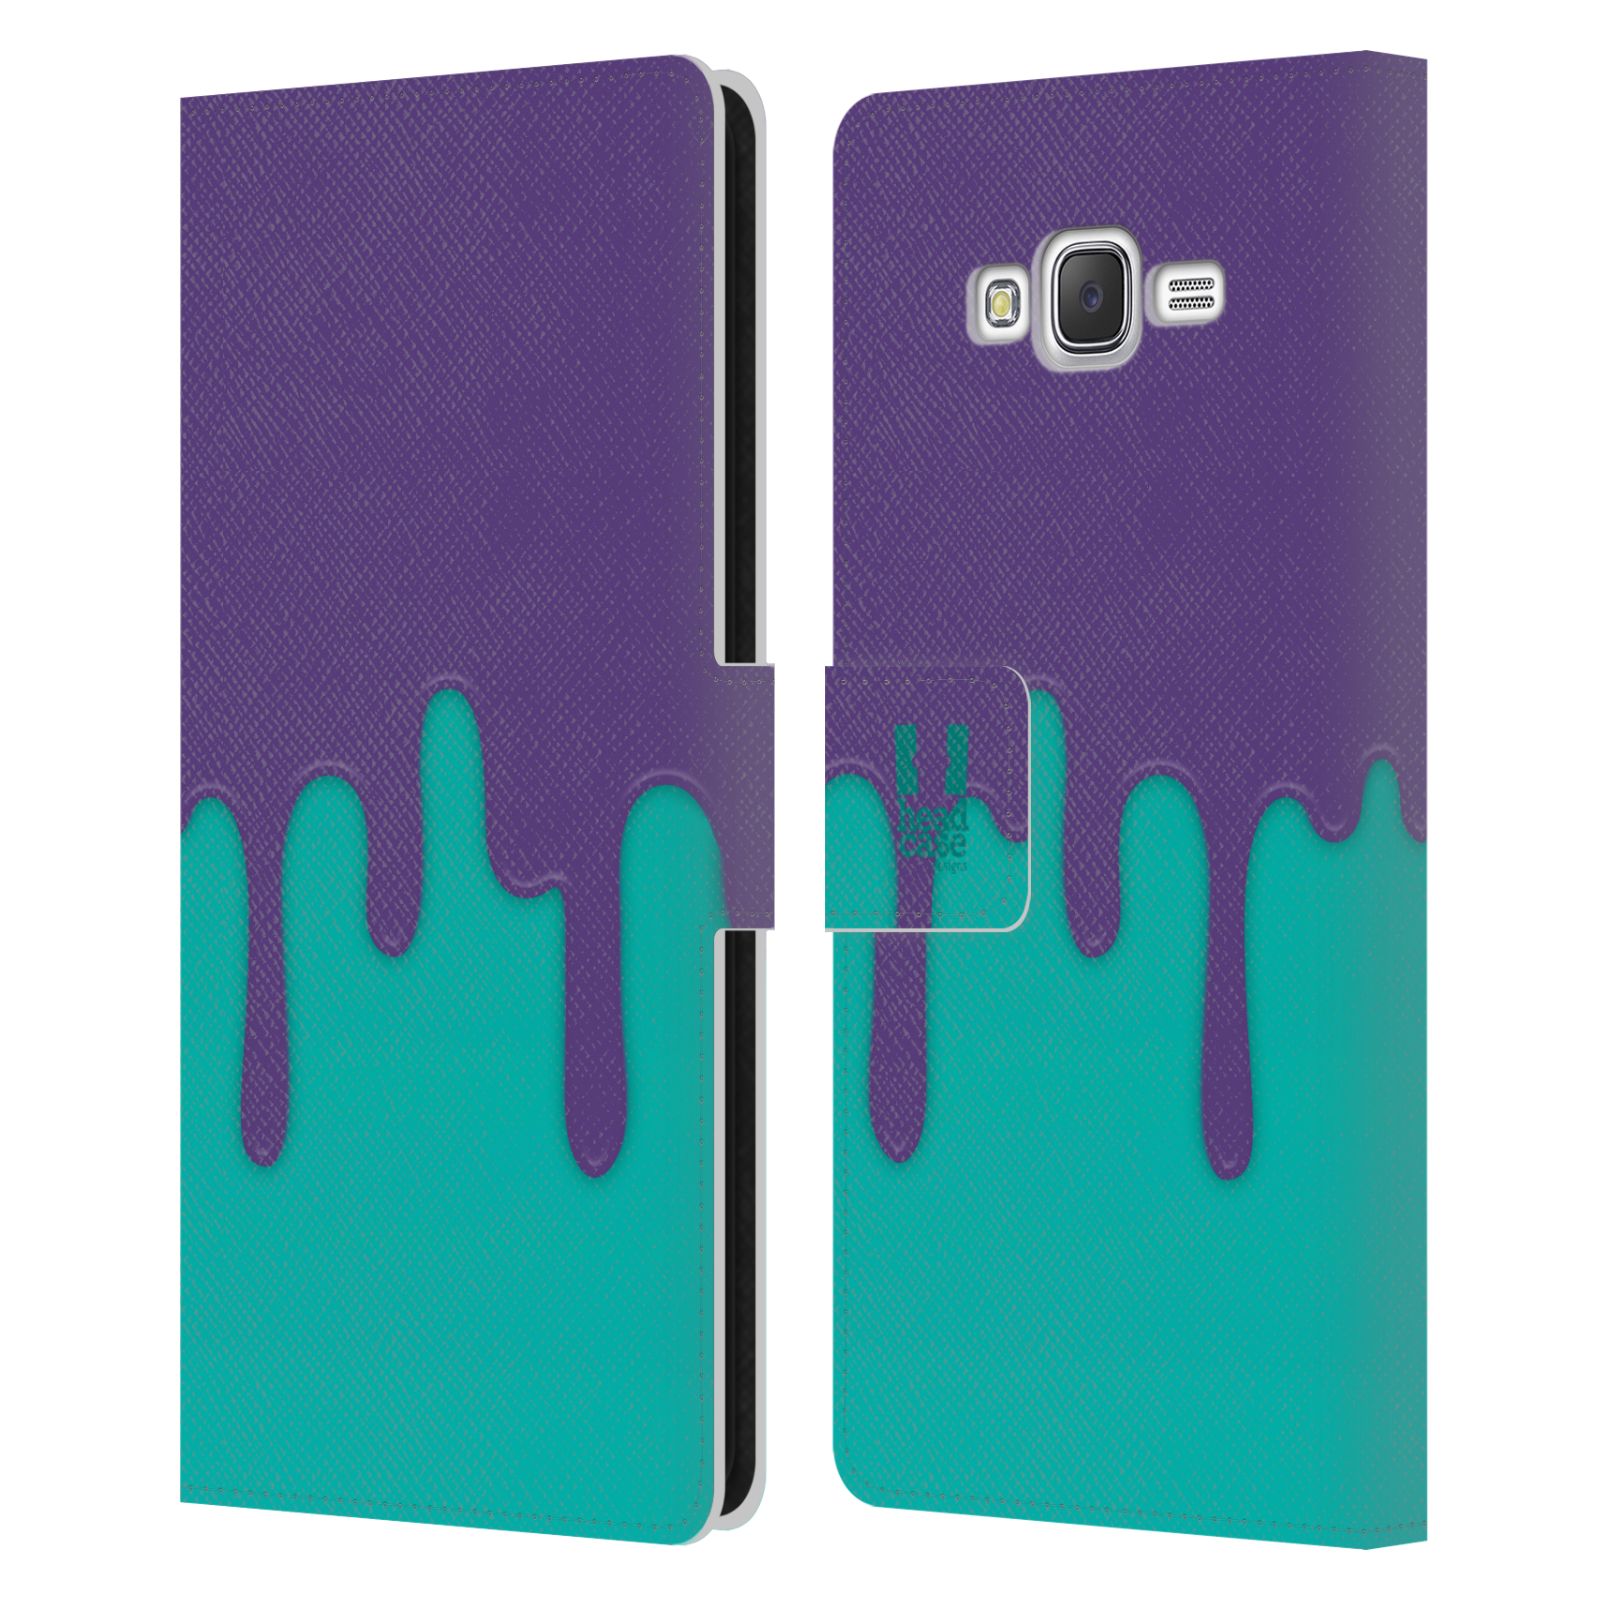 HEAD CASE Flipové pouzdro pro mobil Samsung Galaxy J7, J700 Rozlitá barva fialová a tyrkysová